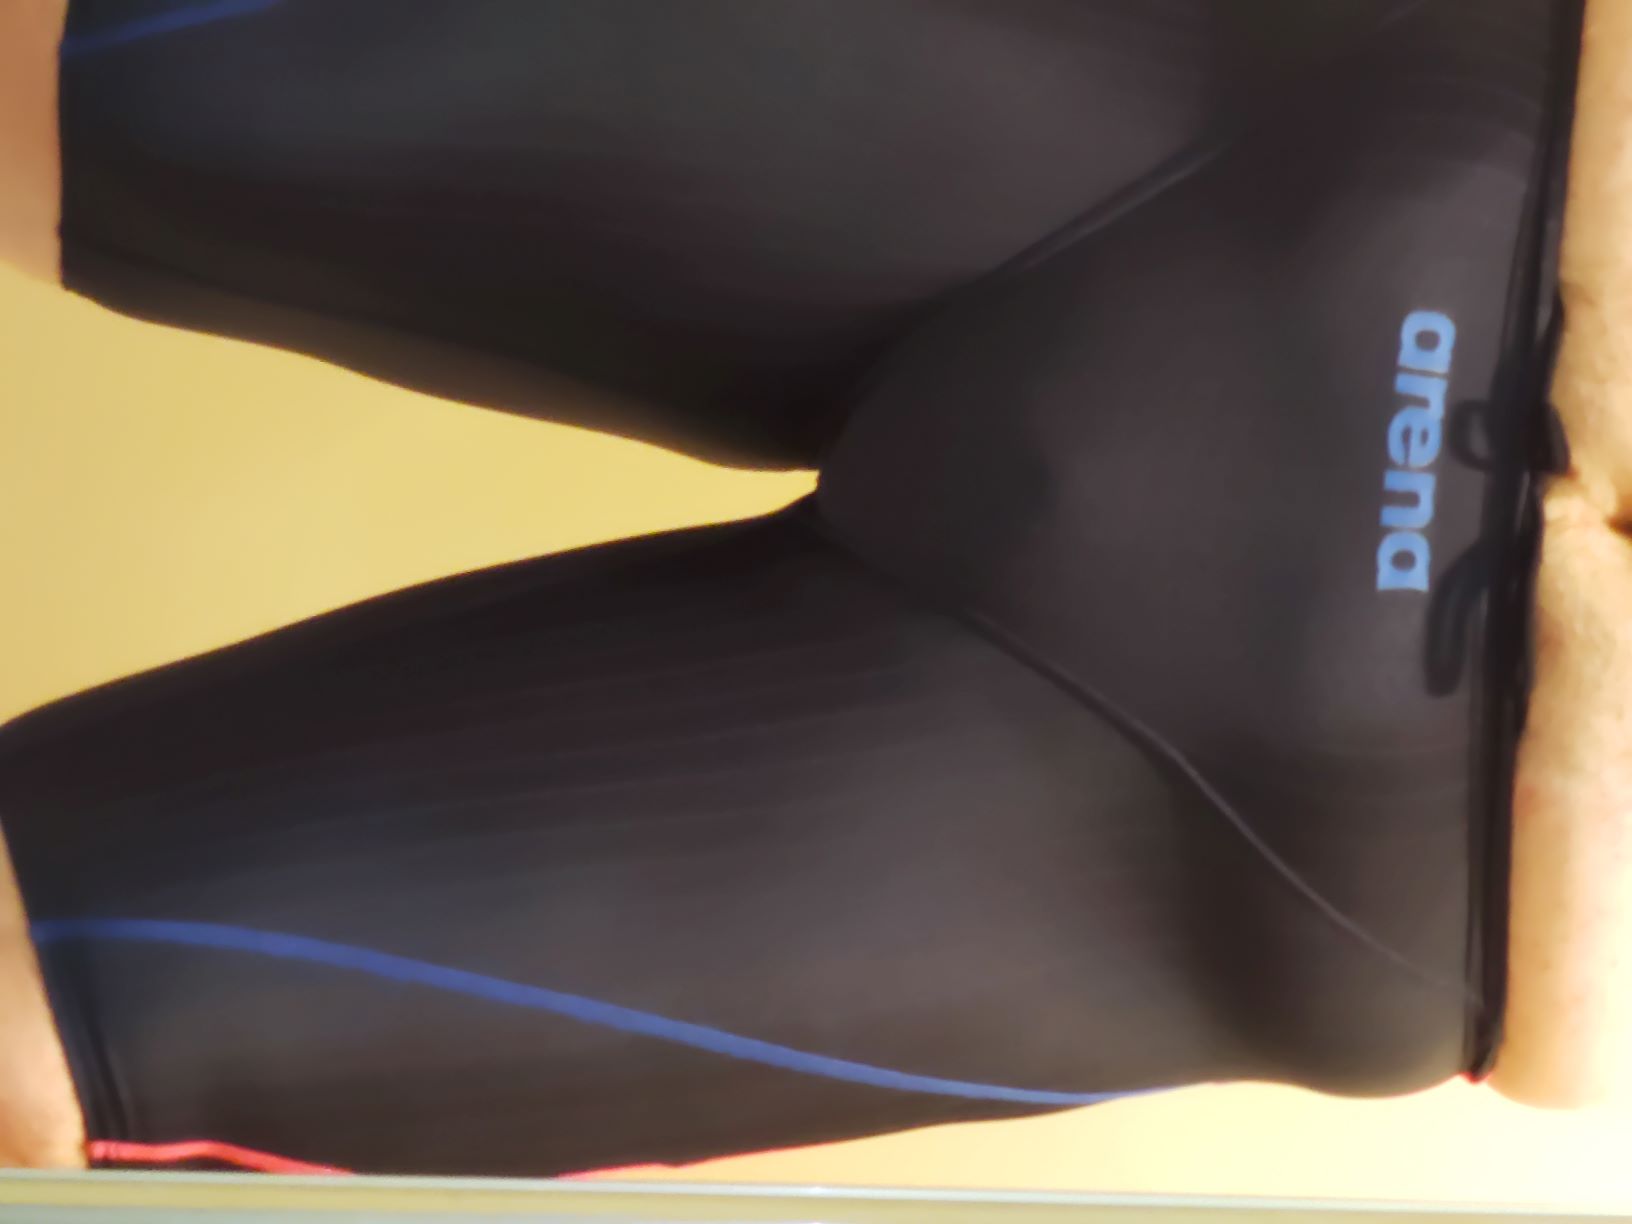 [男性] スパッツ型競泳水着画像掲示板へ投稿されたkan様のスパッツ型競泳水着画像 No.16281540340001